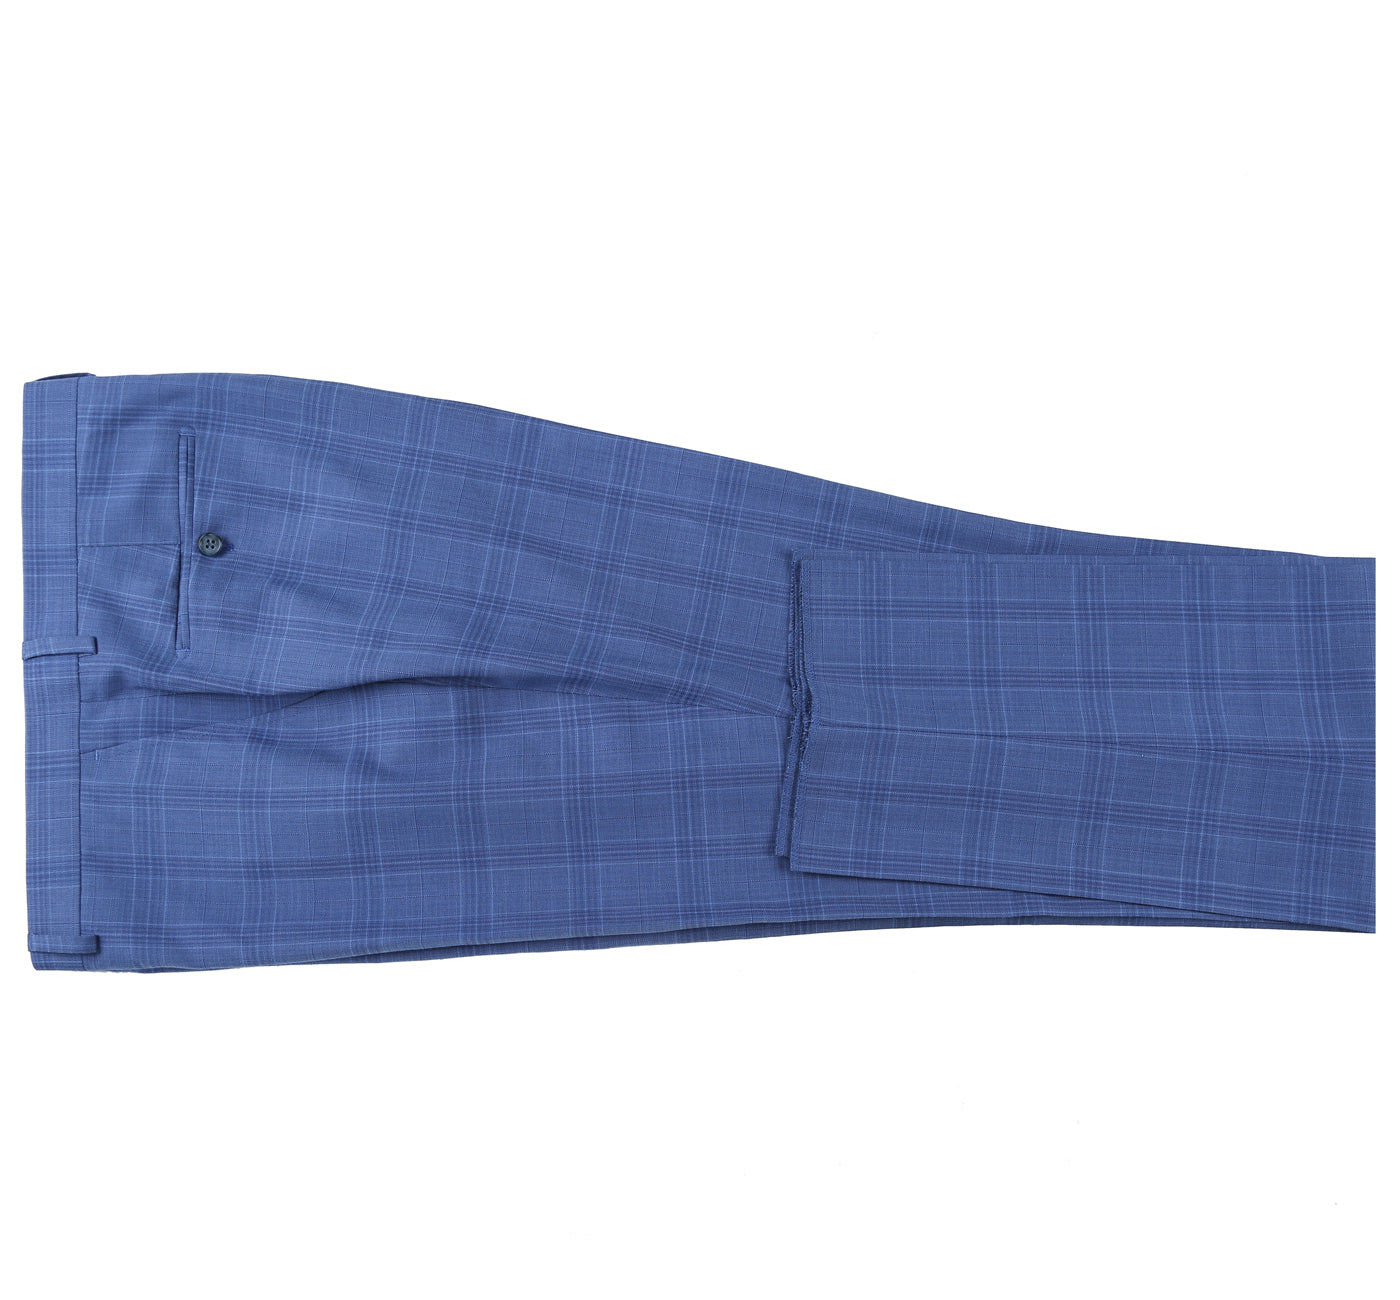 293-10 Men's 2-Piece Slim Fit Medium Blue Windowpane Suit